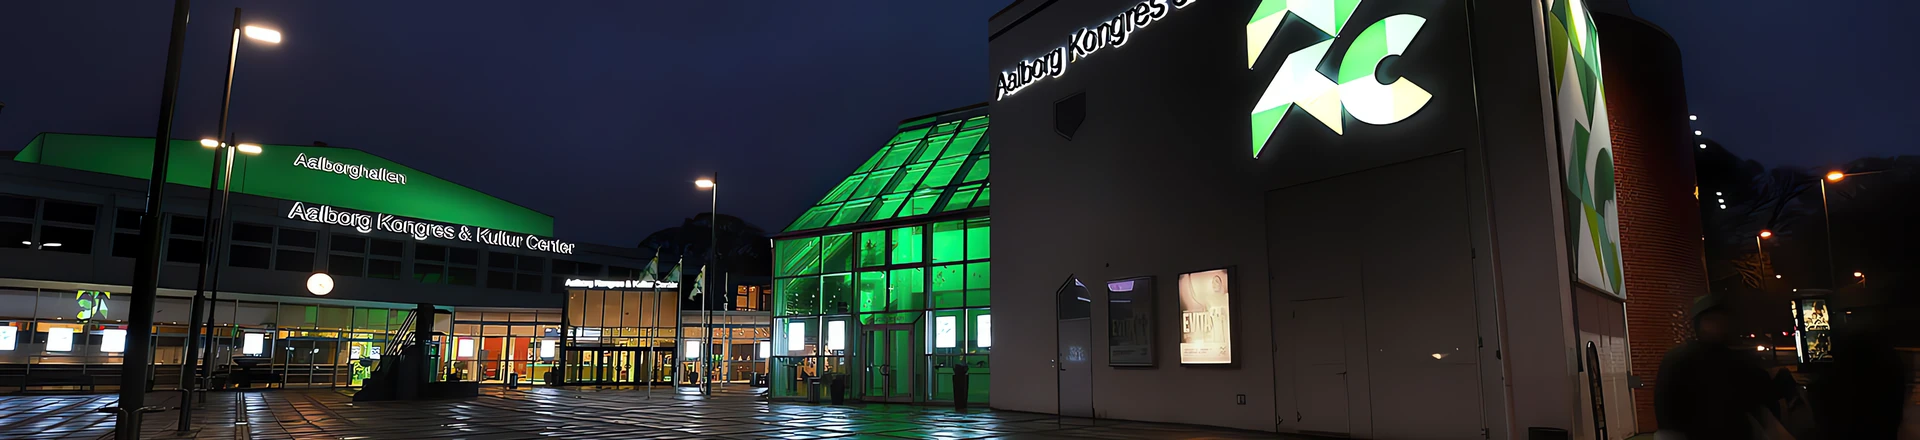 Równowaga, wszechstronność, nowoczesność - Centrum Konferencji i Kultury w Aalborg instaluje ponad 200 świateł Cameo